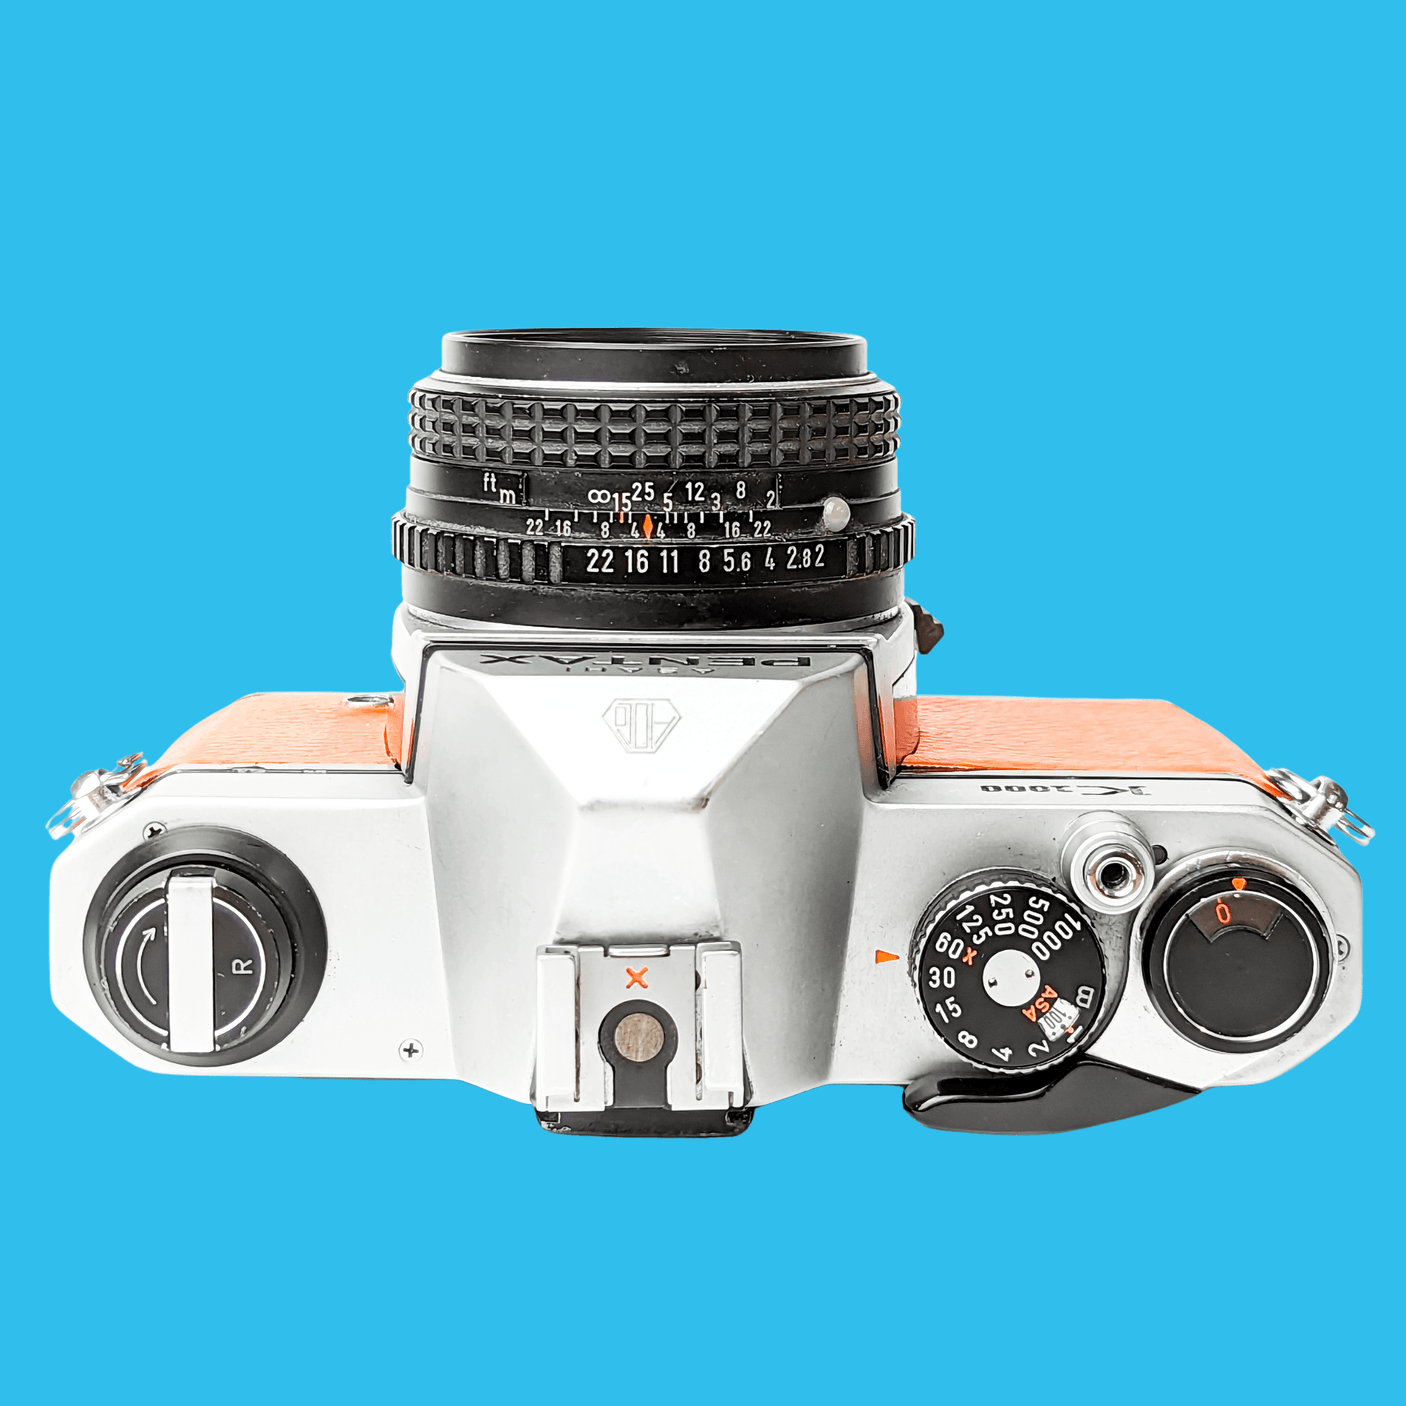 Pentax K1000 Orange Leather Vintage SLR 35mm Film Camera with Pentax f/2 50mm Prime Lens.